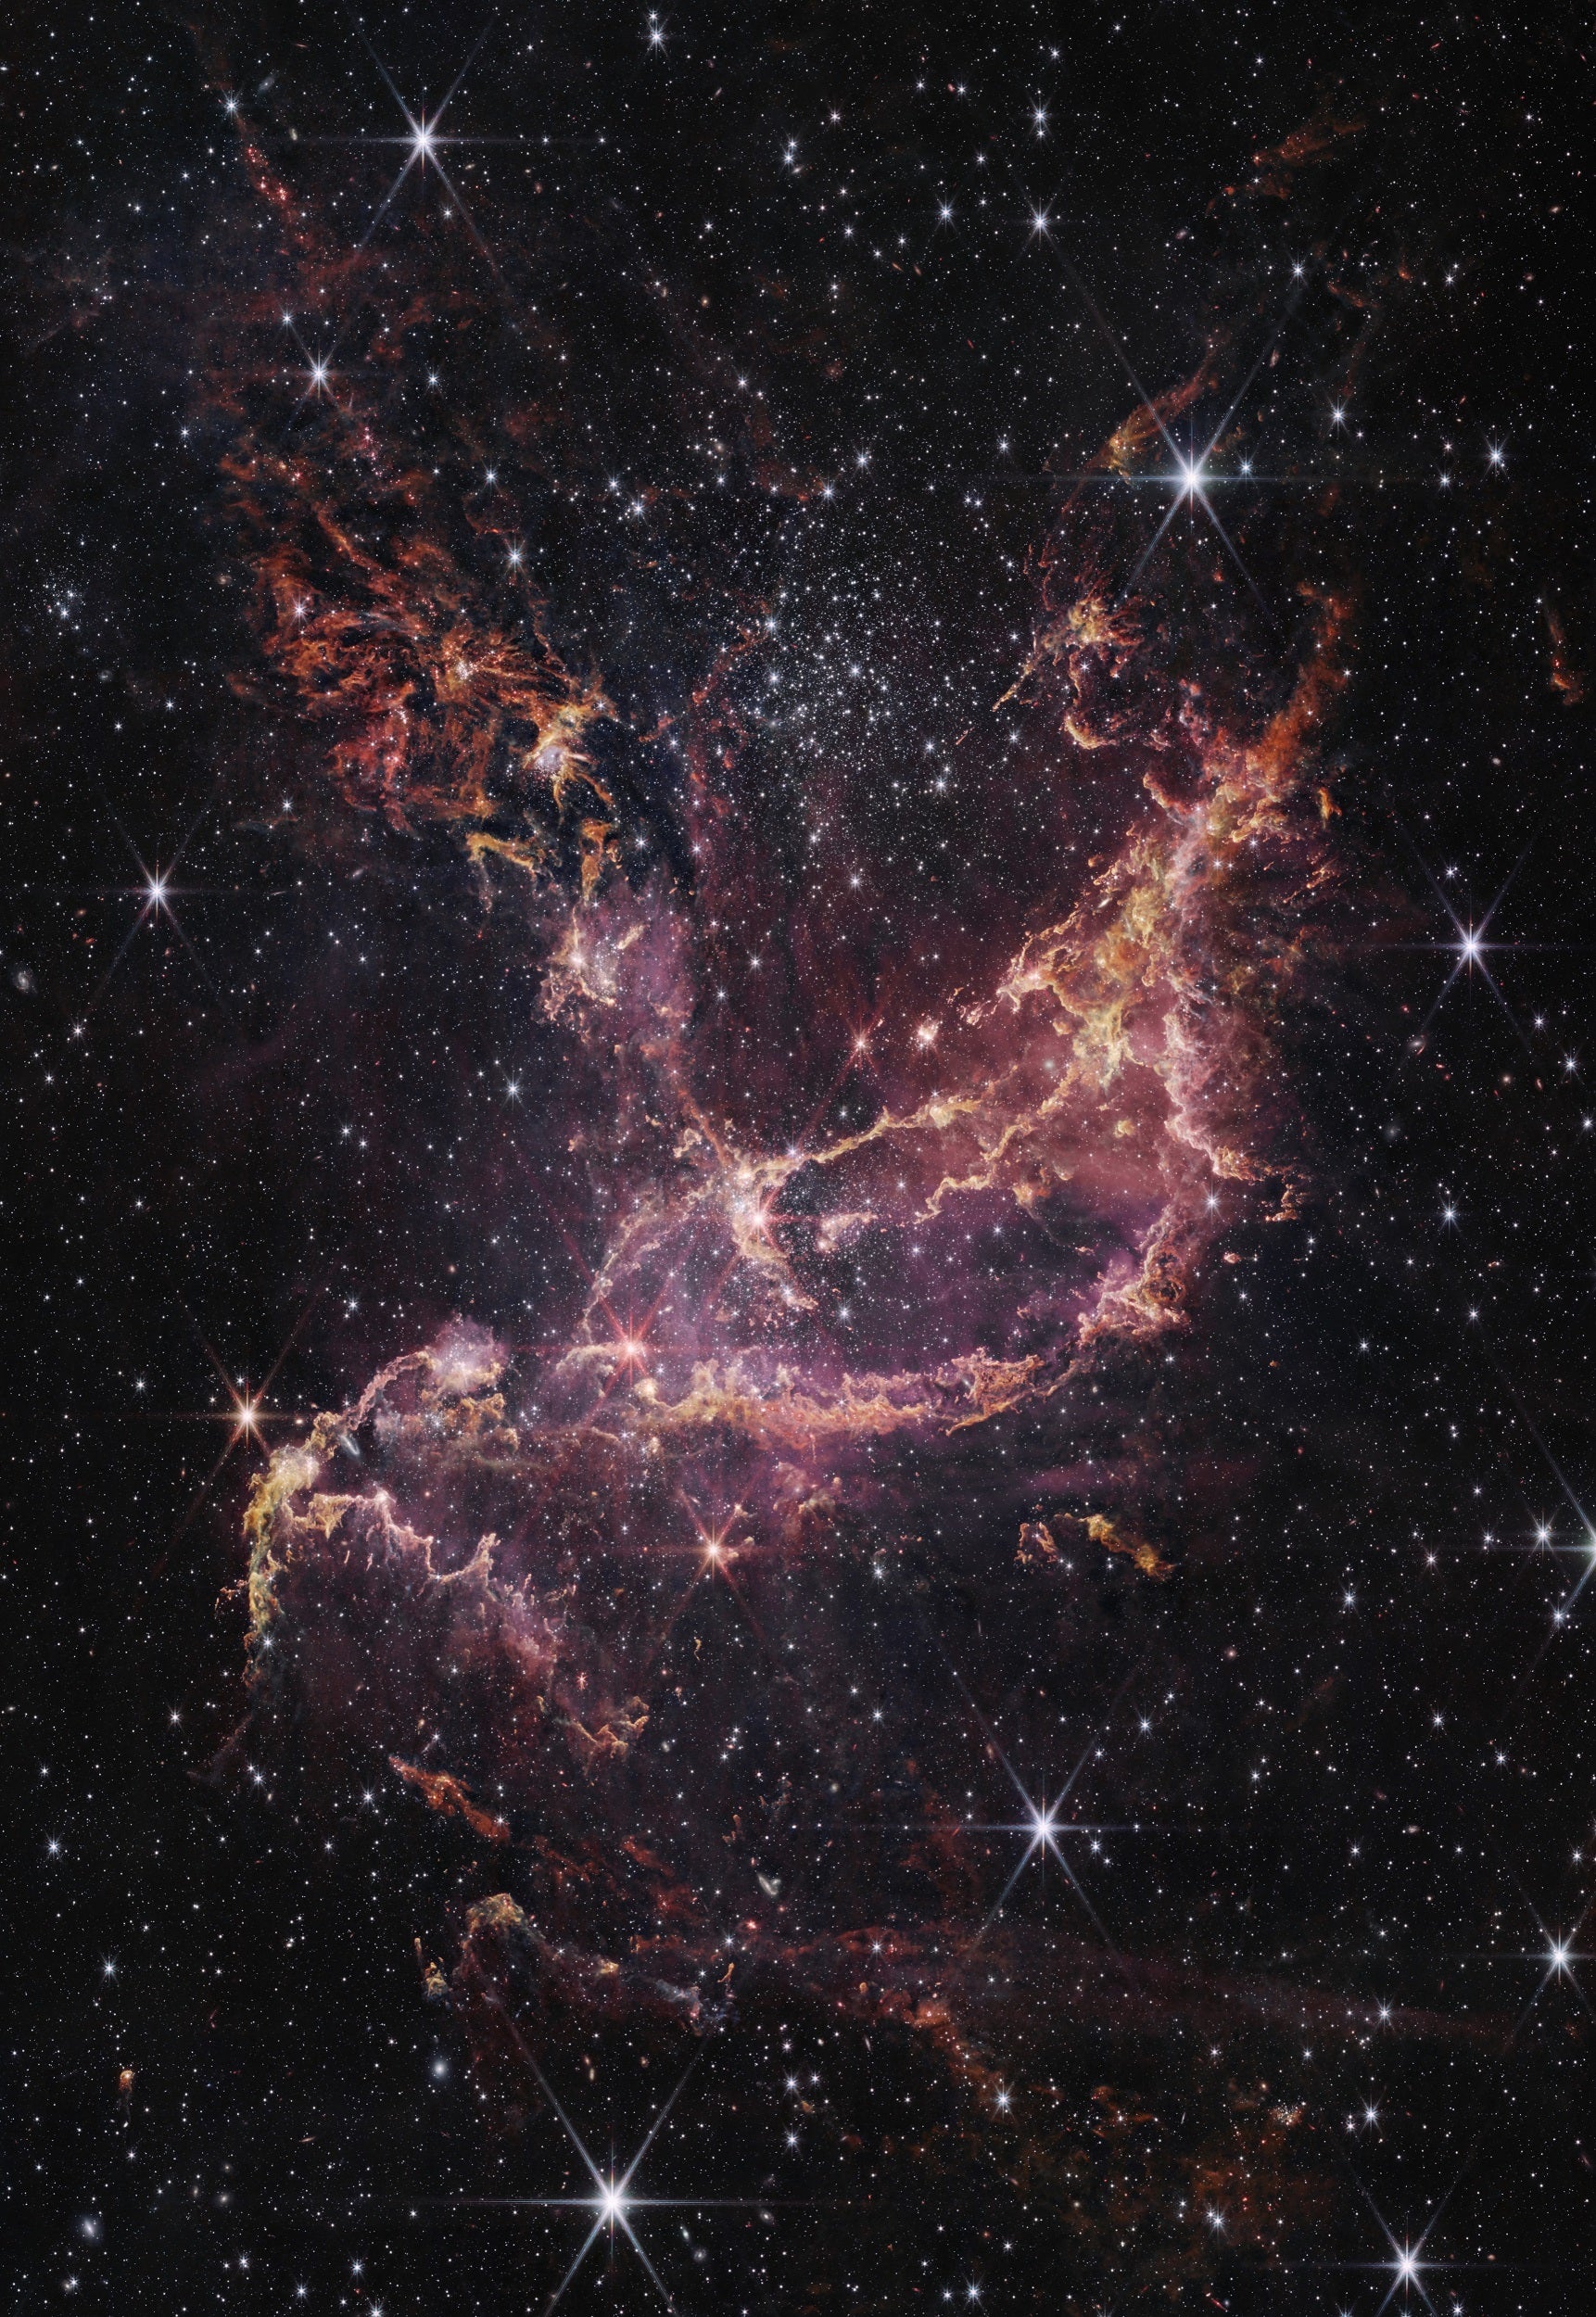 crab nebula infrared